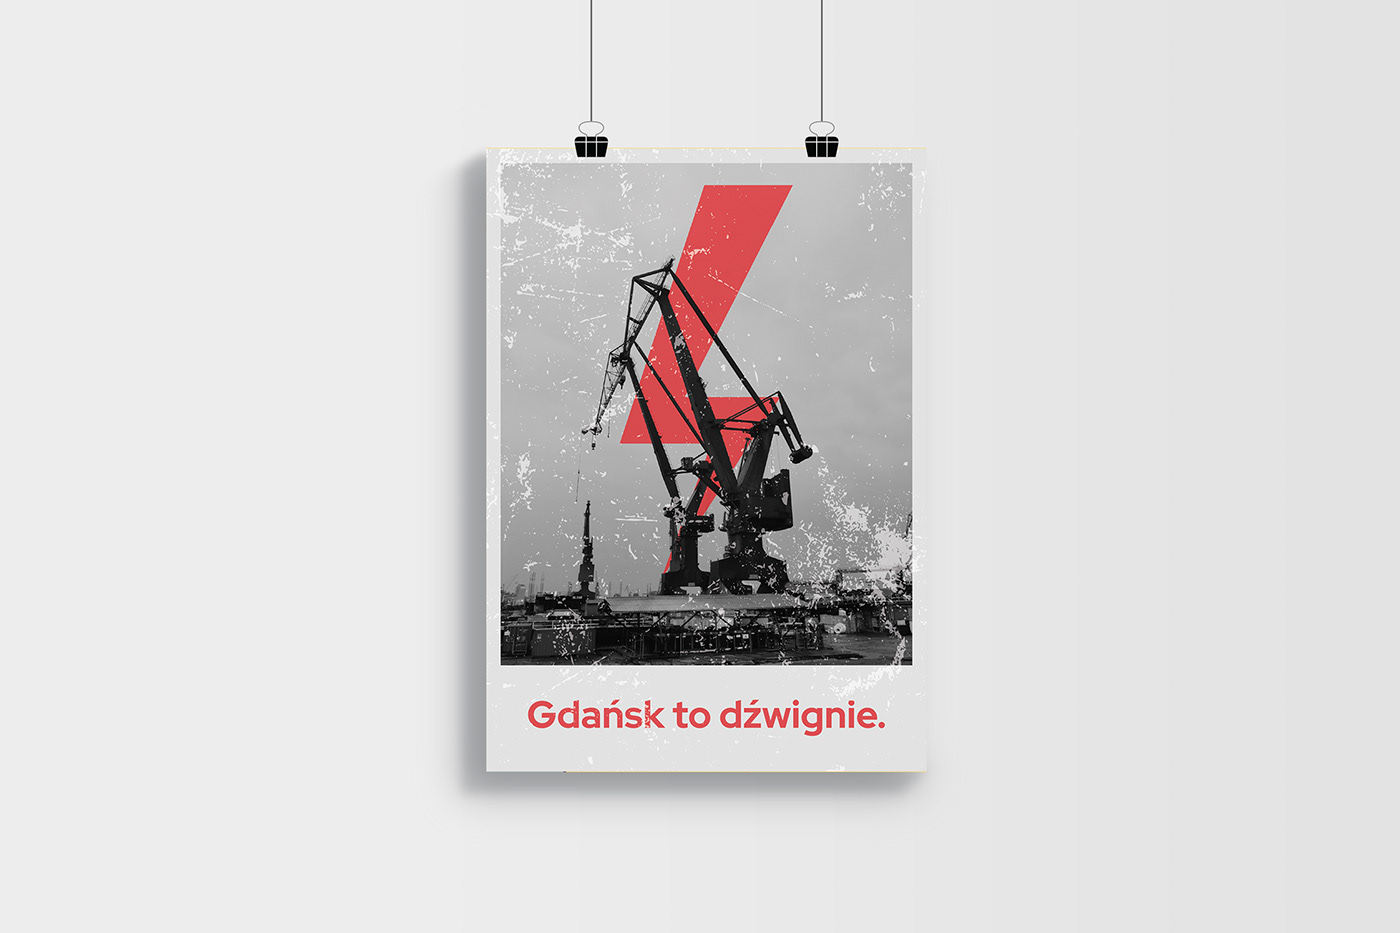 Gdansk plakat poster protestkobiet strajkkobiet